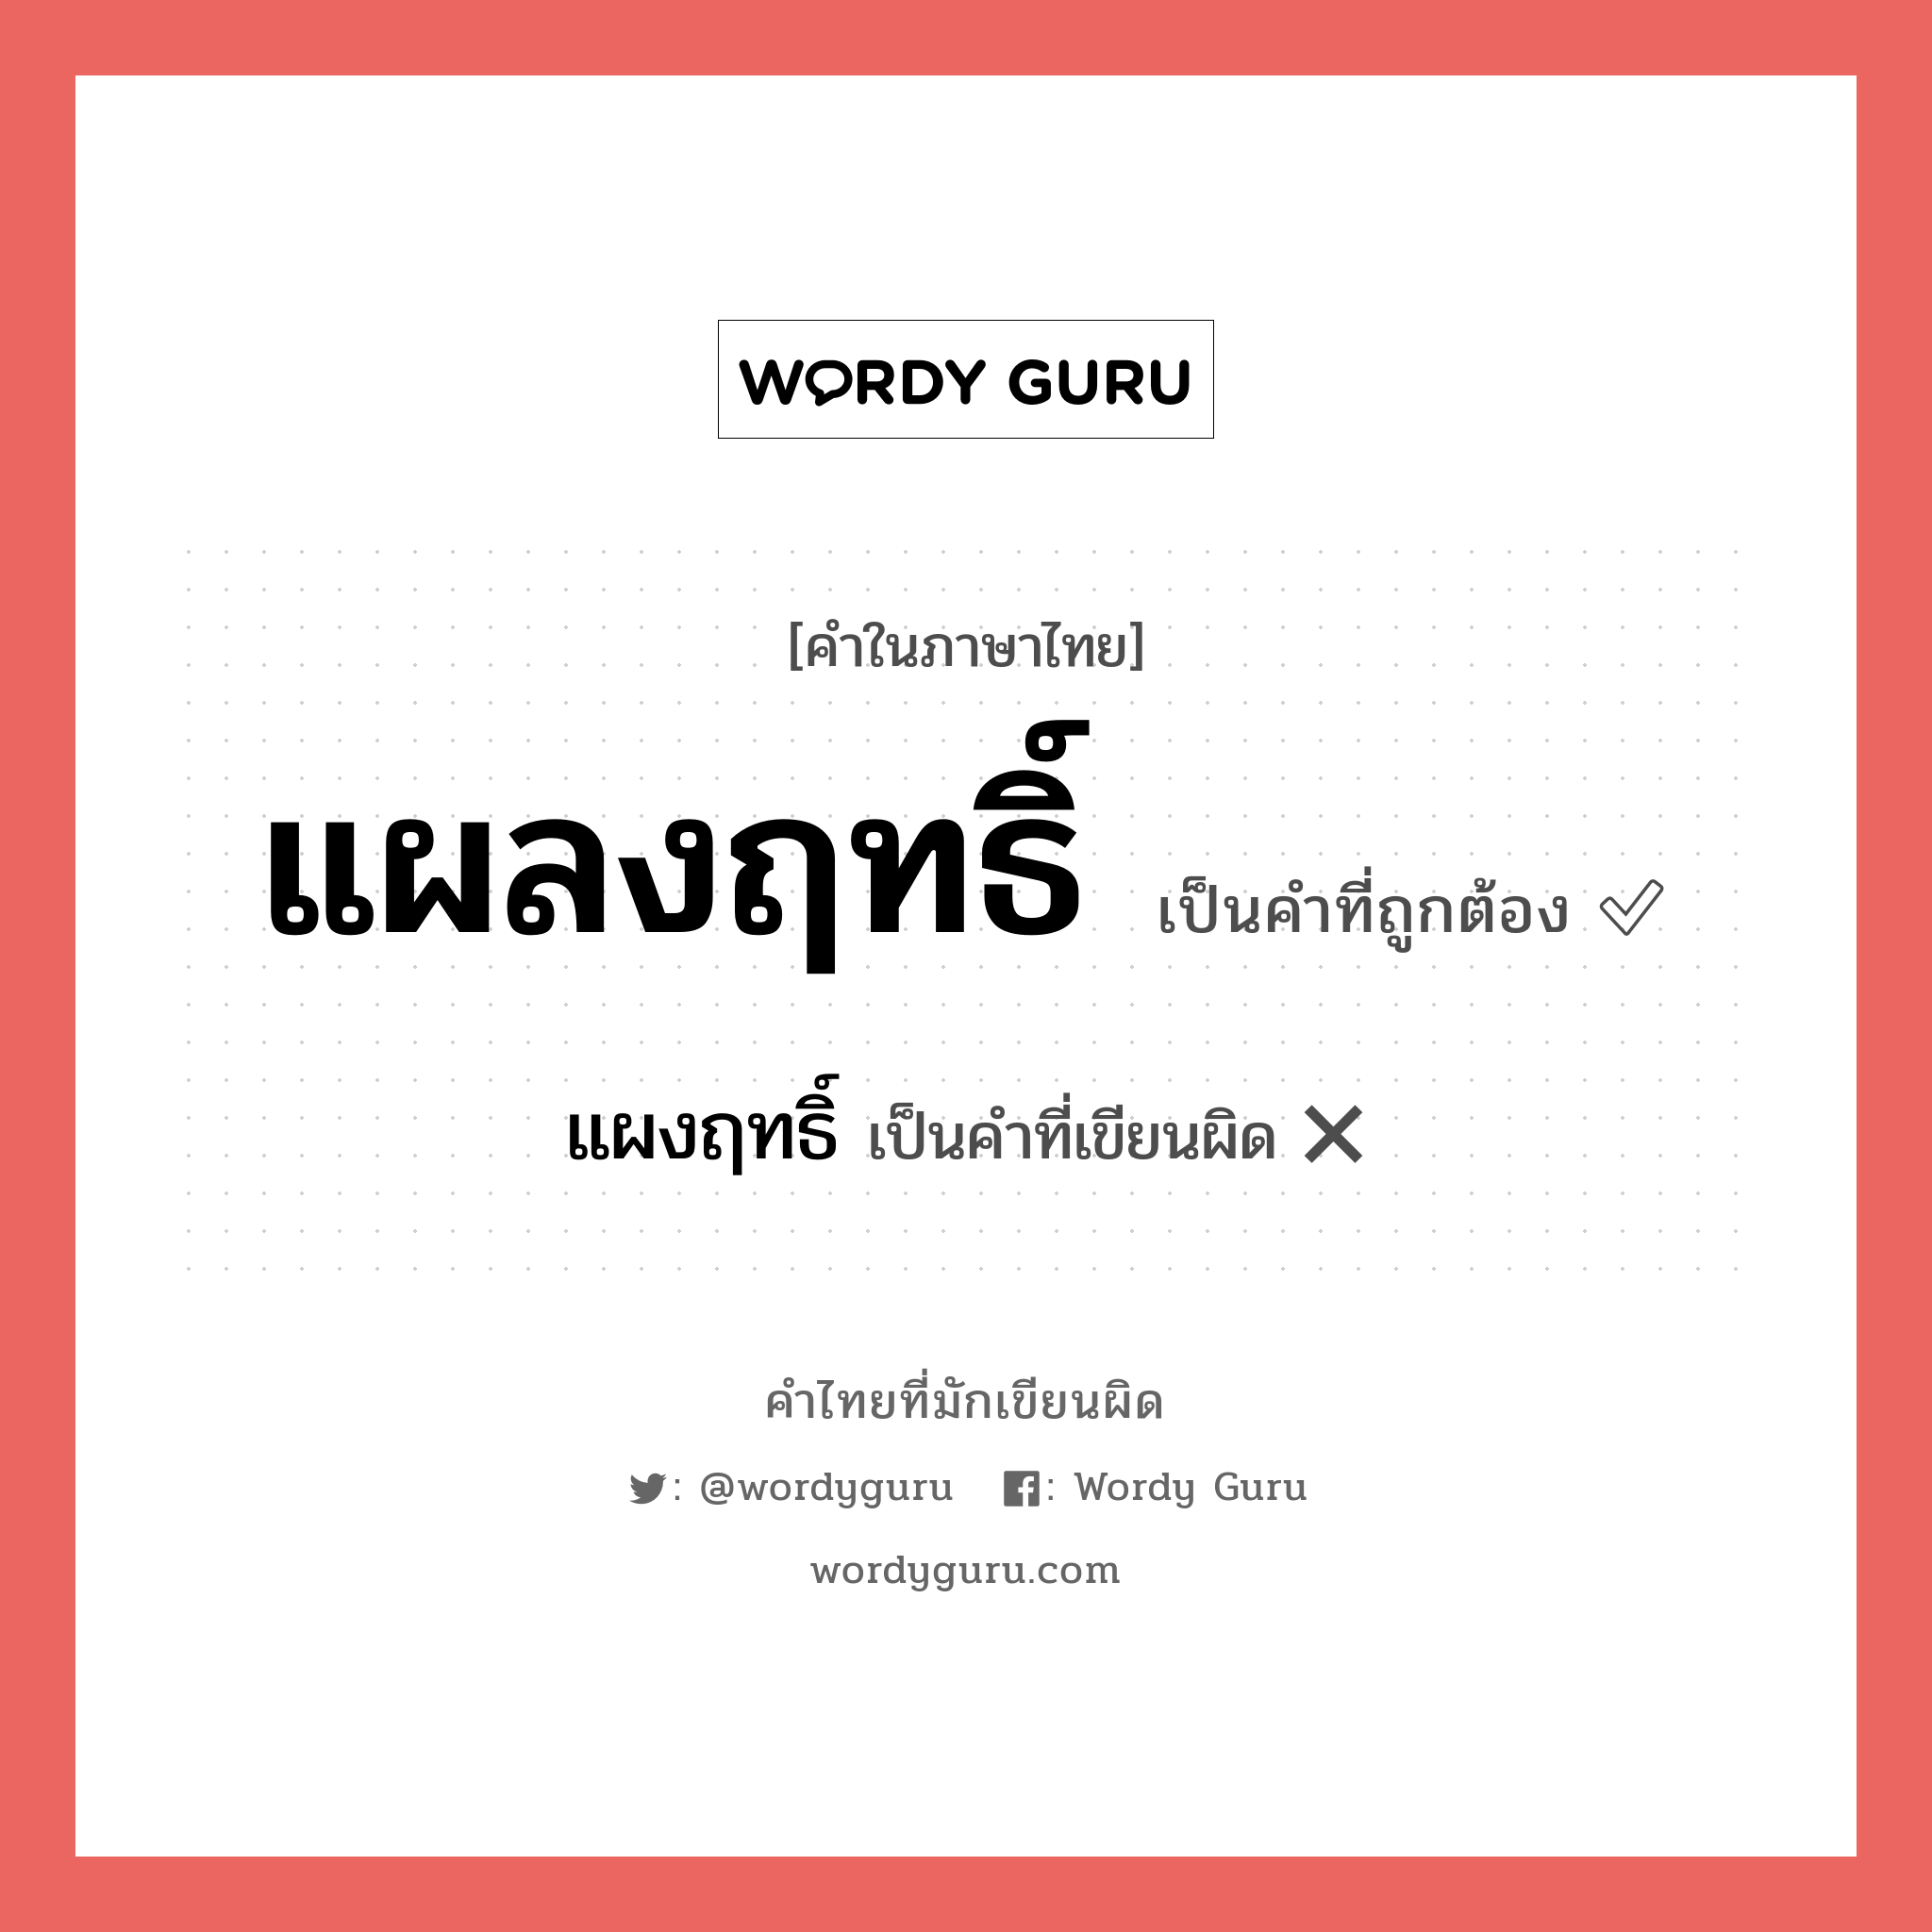 แผงฤทธิ์ หรือ แผลงฤทธิ์ คำไหนเขียนถูก?, คำในภาษาไทยที่มักเขียนผิด แผงฤทธิ์ คำที่ผิด ❌ แผลงฤทธิ์